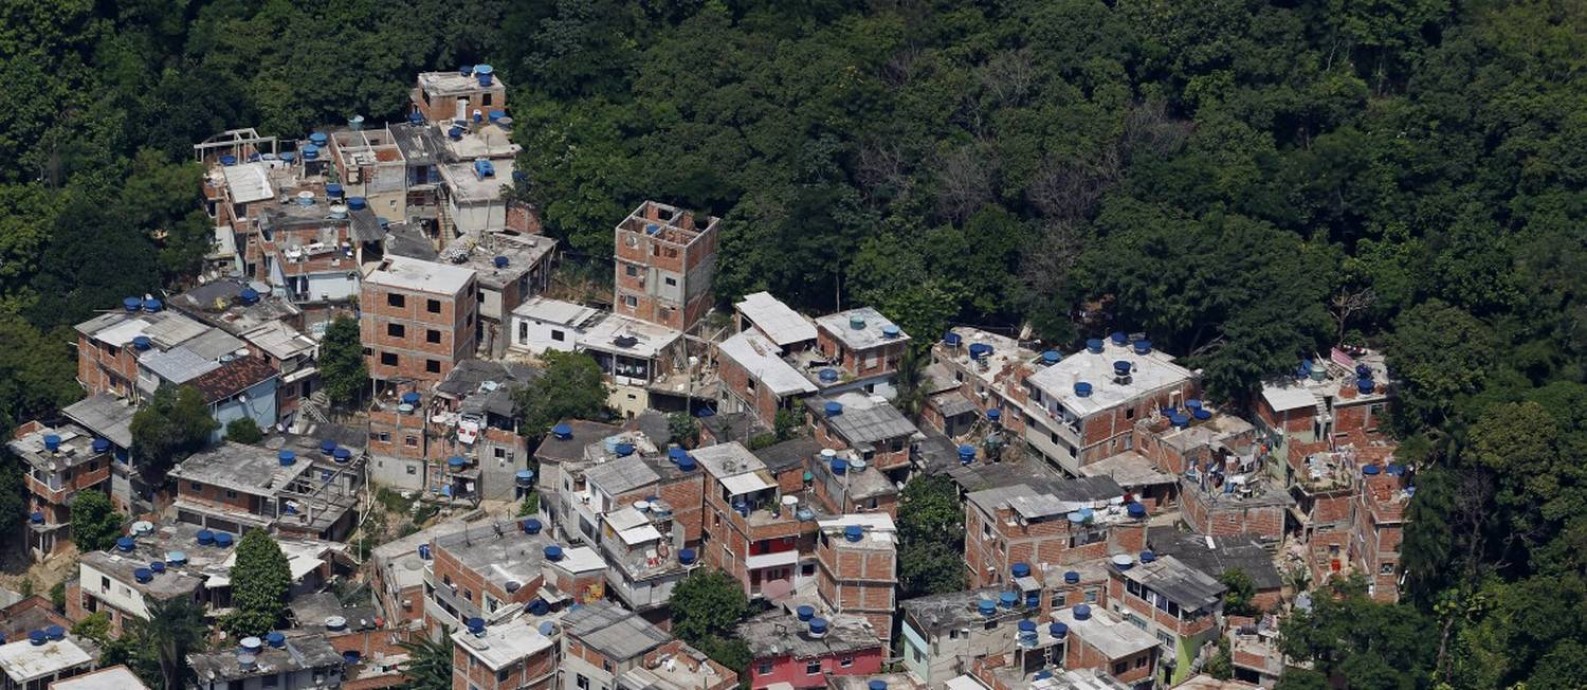 Vista aérea da Tijuquinha, no Itanhangá: moradores começam a receber títulos de propriedade de casas em dois meses Foto: Custódio Coimbra / Agência O Globo